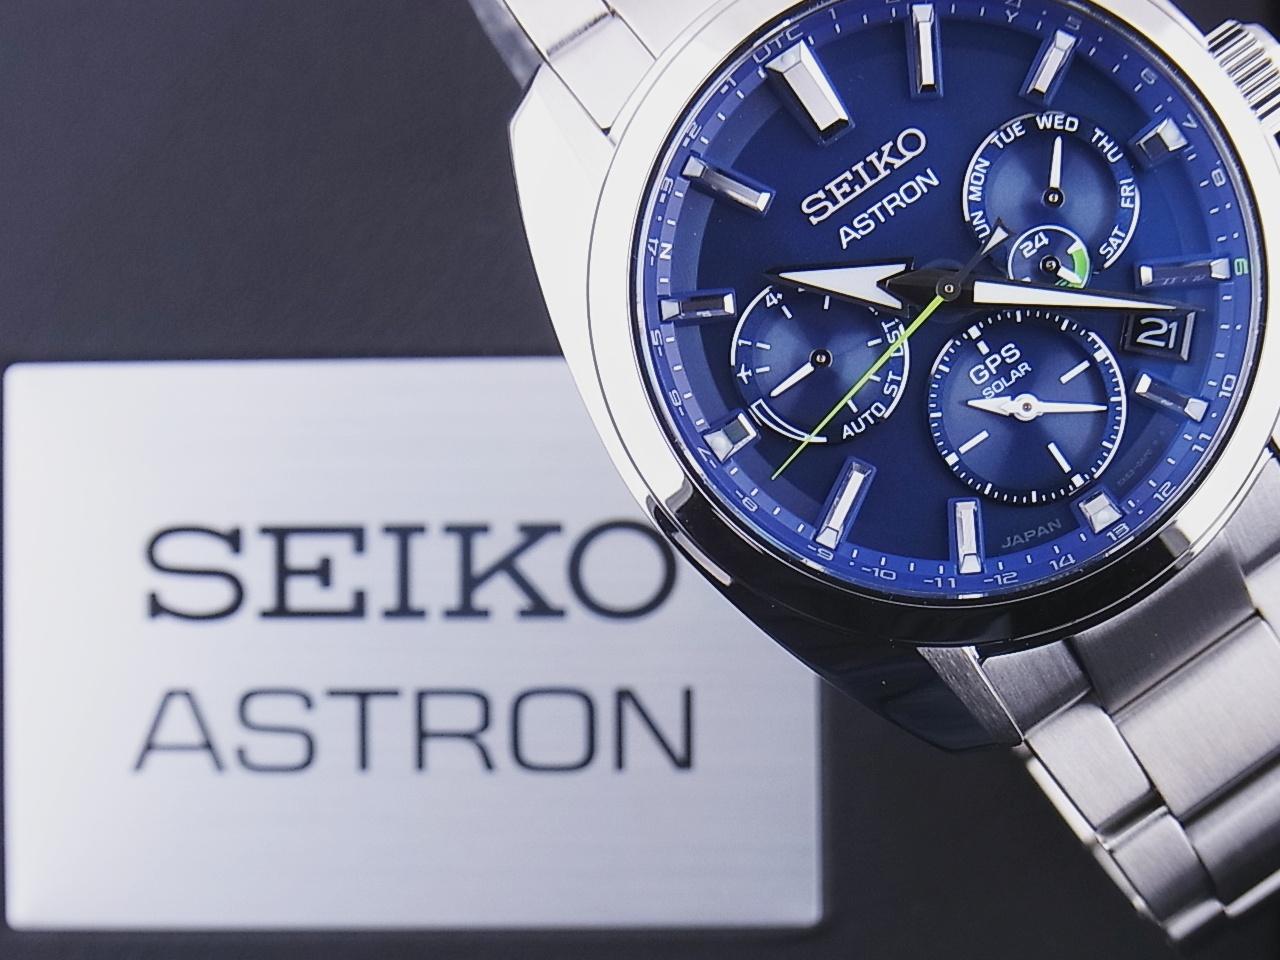 SEIKO セイコー メンズ腕時計 アストロン デュアルタイム ソーラー電波時計 SBVC055 ブルー文字盤 JAPAN COLLECTION 2020 Limited Edition 未使用品